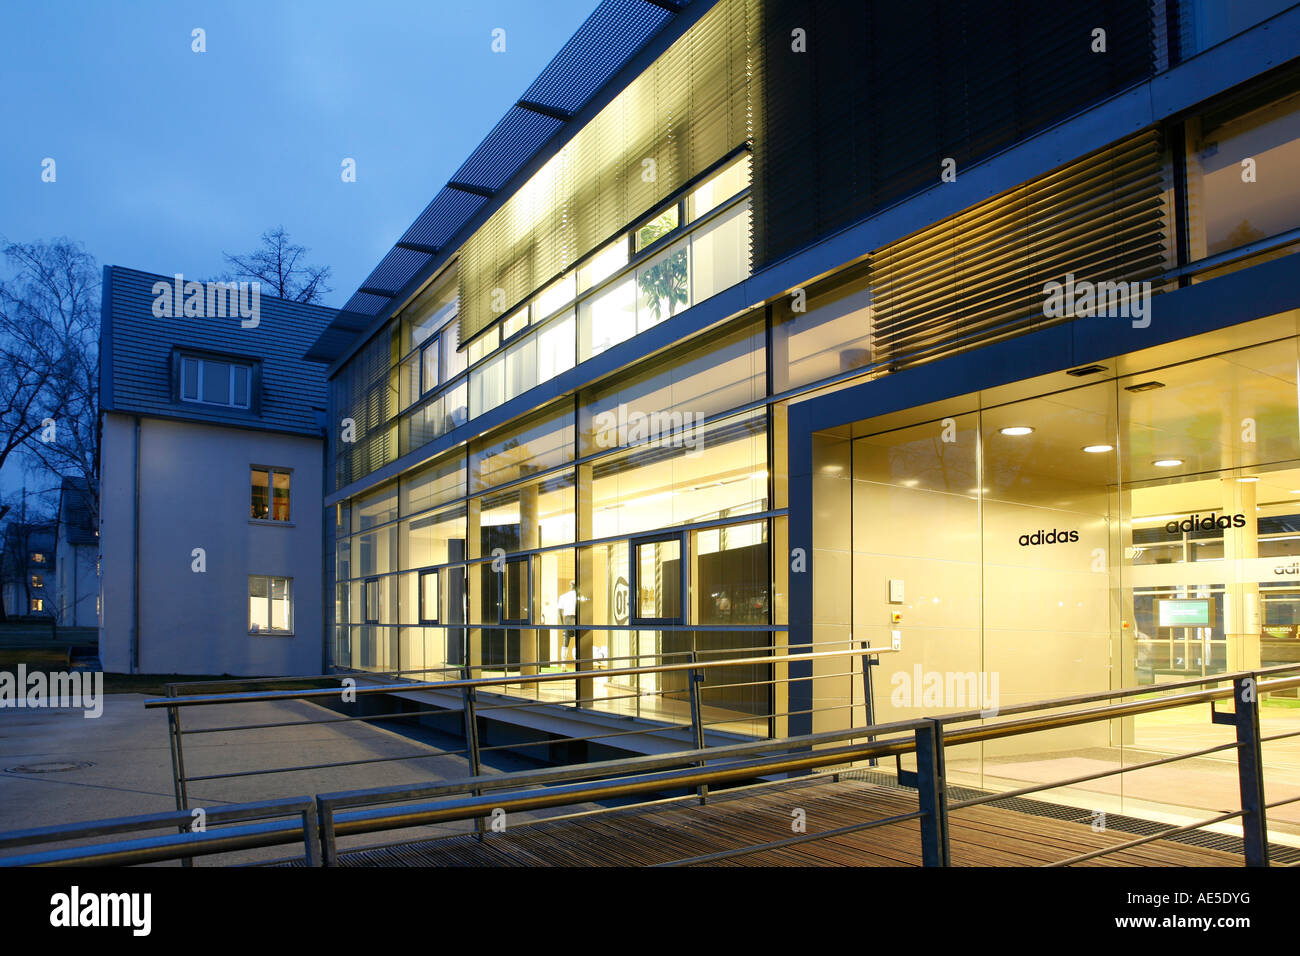 Adidas Hauptsitz in Herzogenaurach, Deutschland Stockfotografie - Alamy